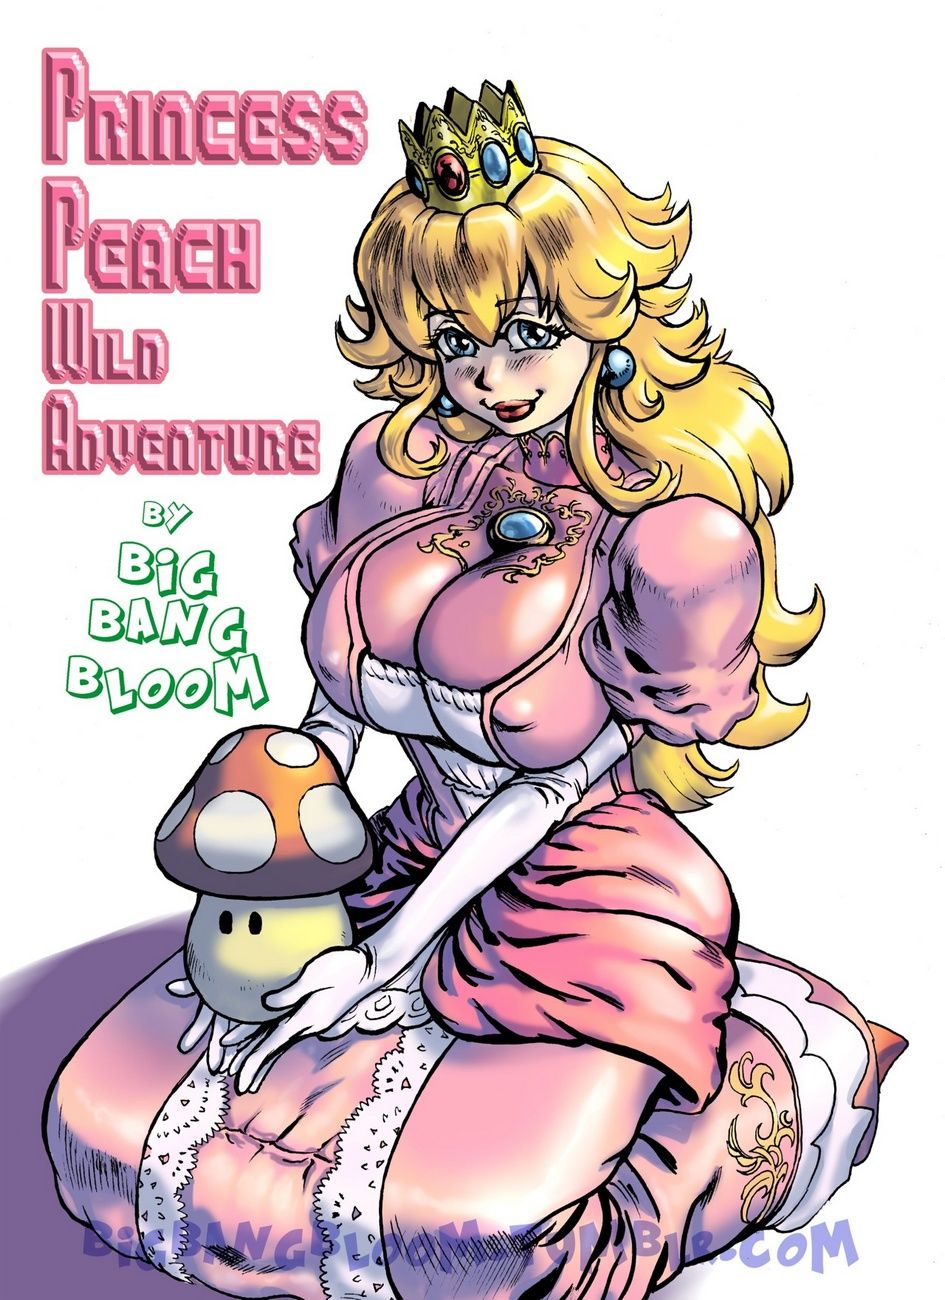 Princess Peach Wild Adventure 1 page 1